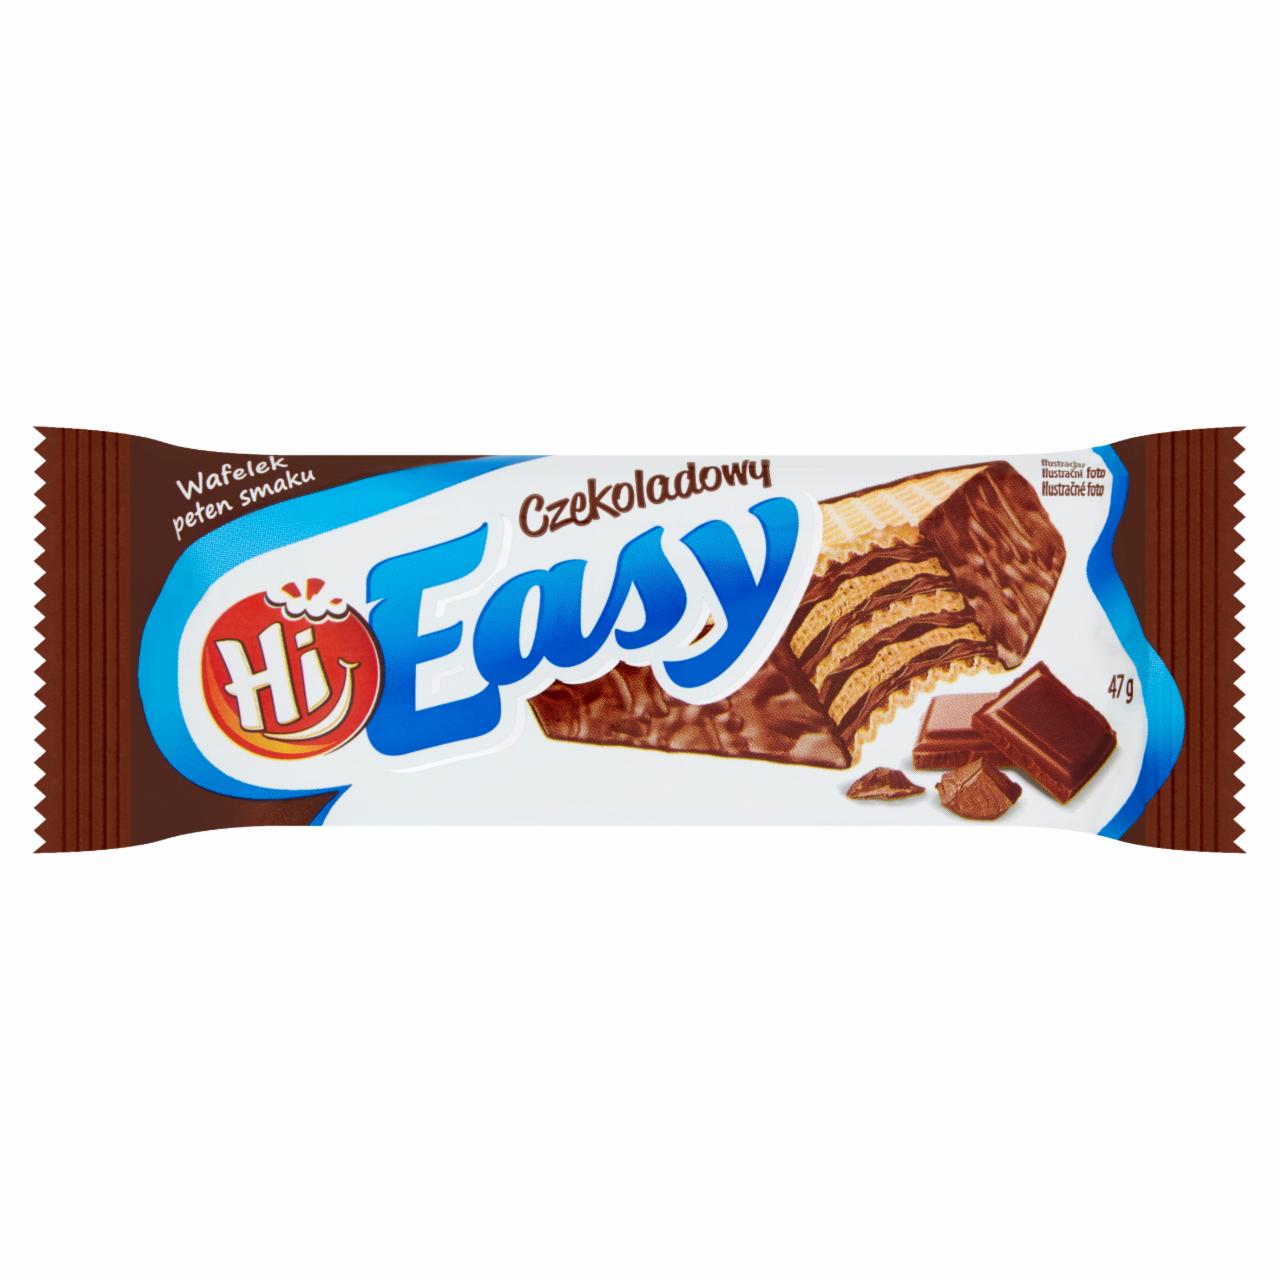 Zdjęcia - Hi Easy Wafelek czekoladowy 47 g